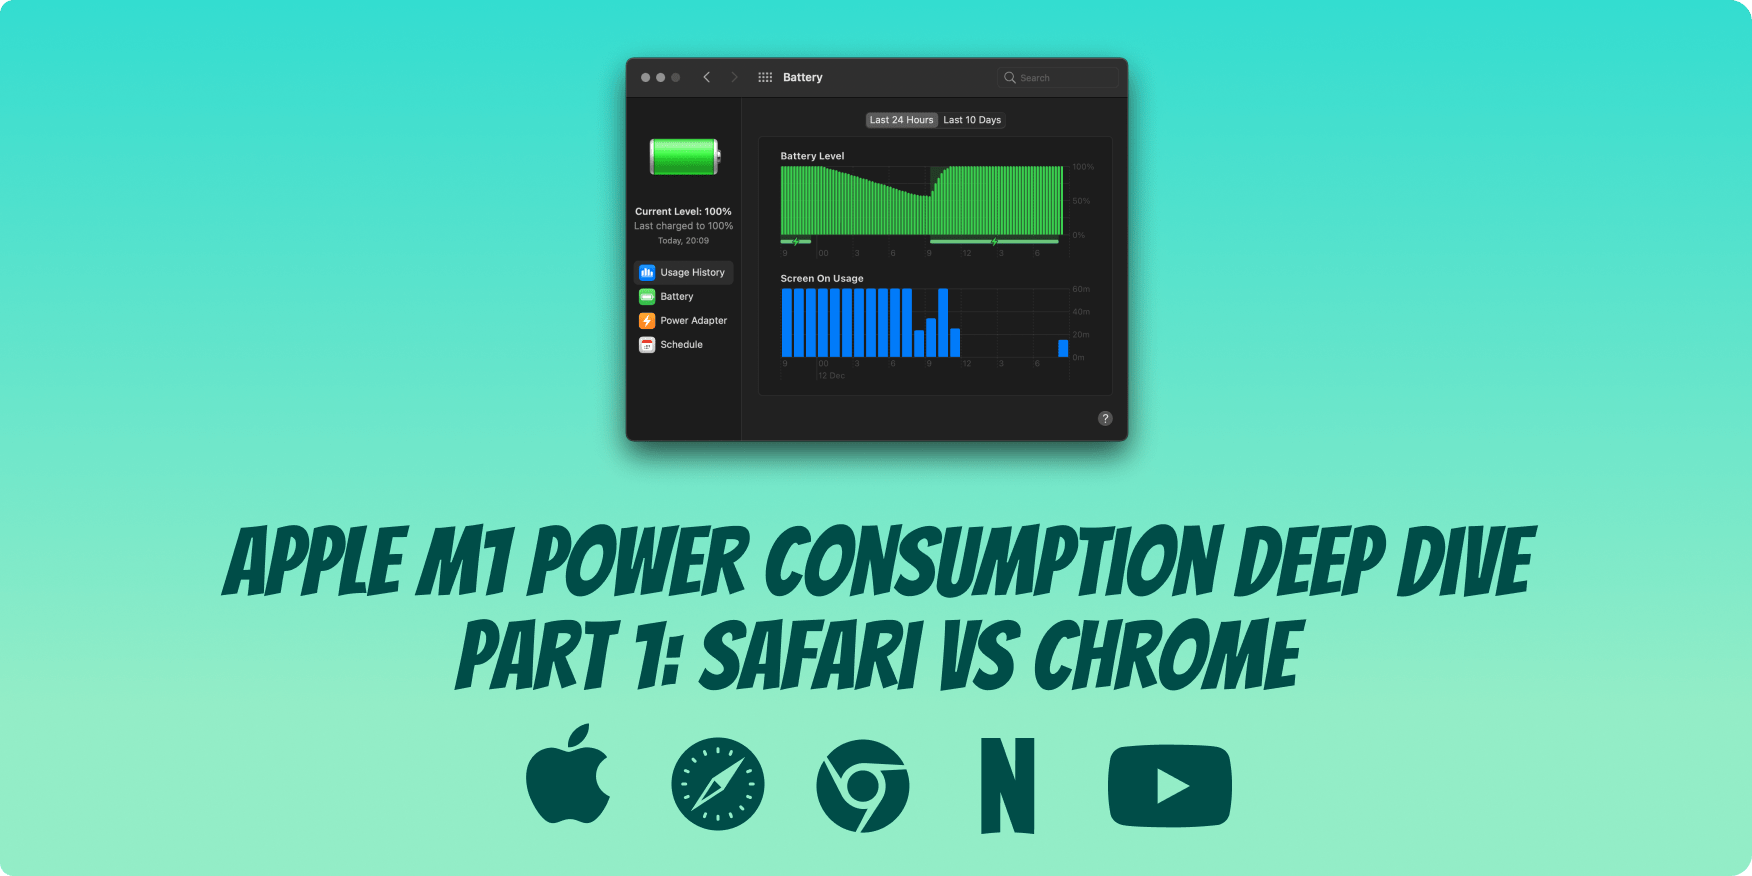 Apple Silicon M1 Power Consumption Deep Dive Part 1 Safari vs Chrome KAY SINGH